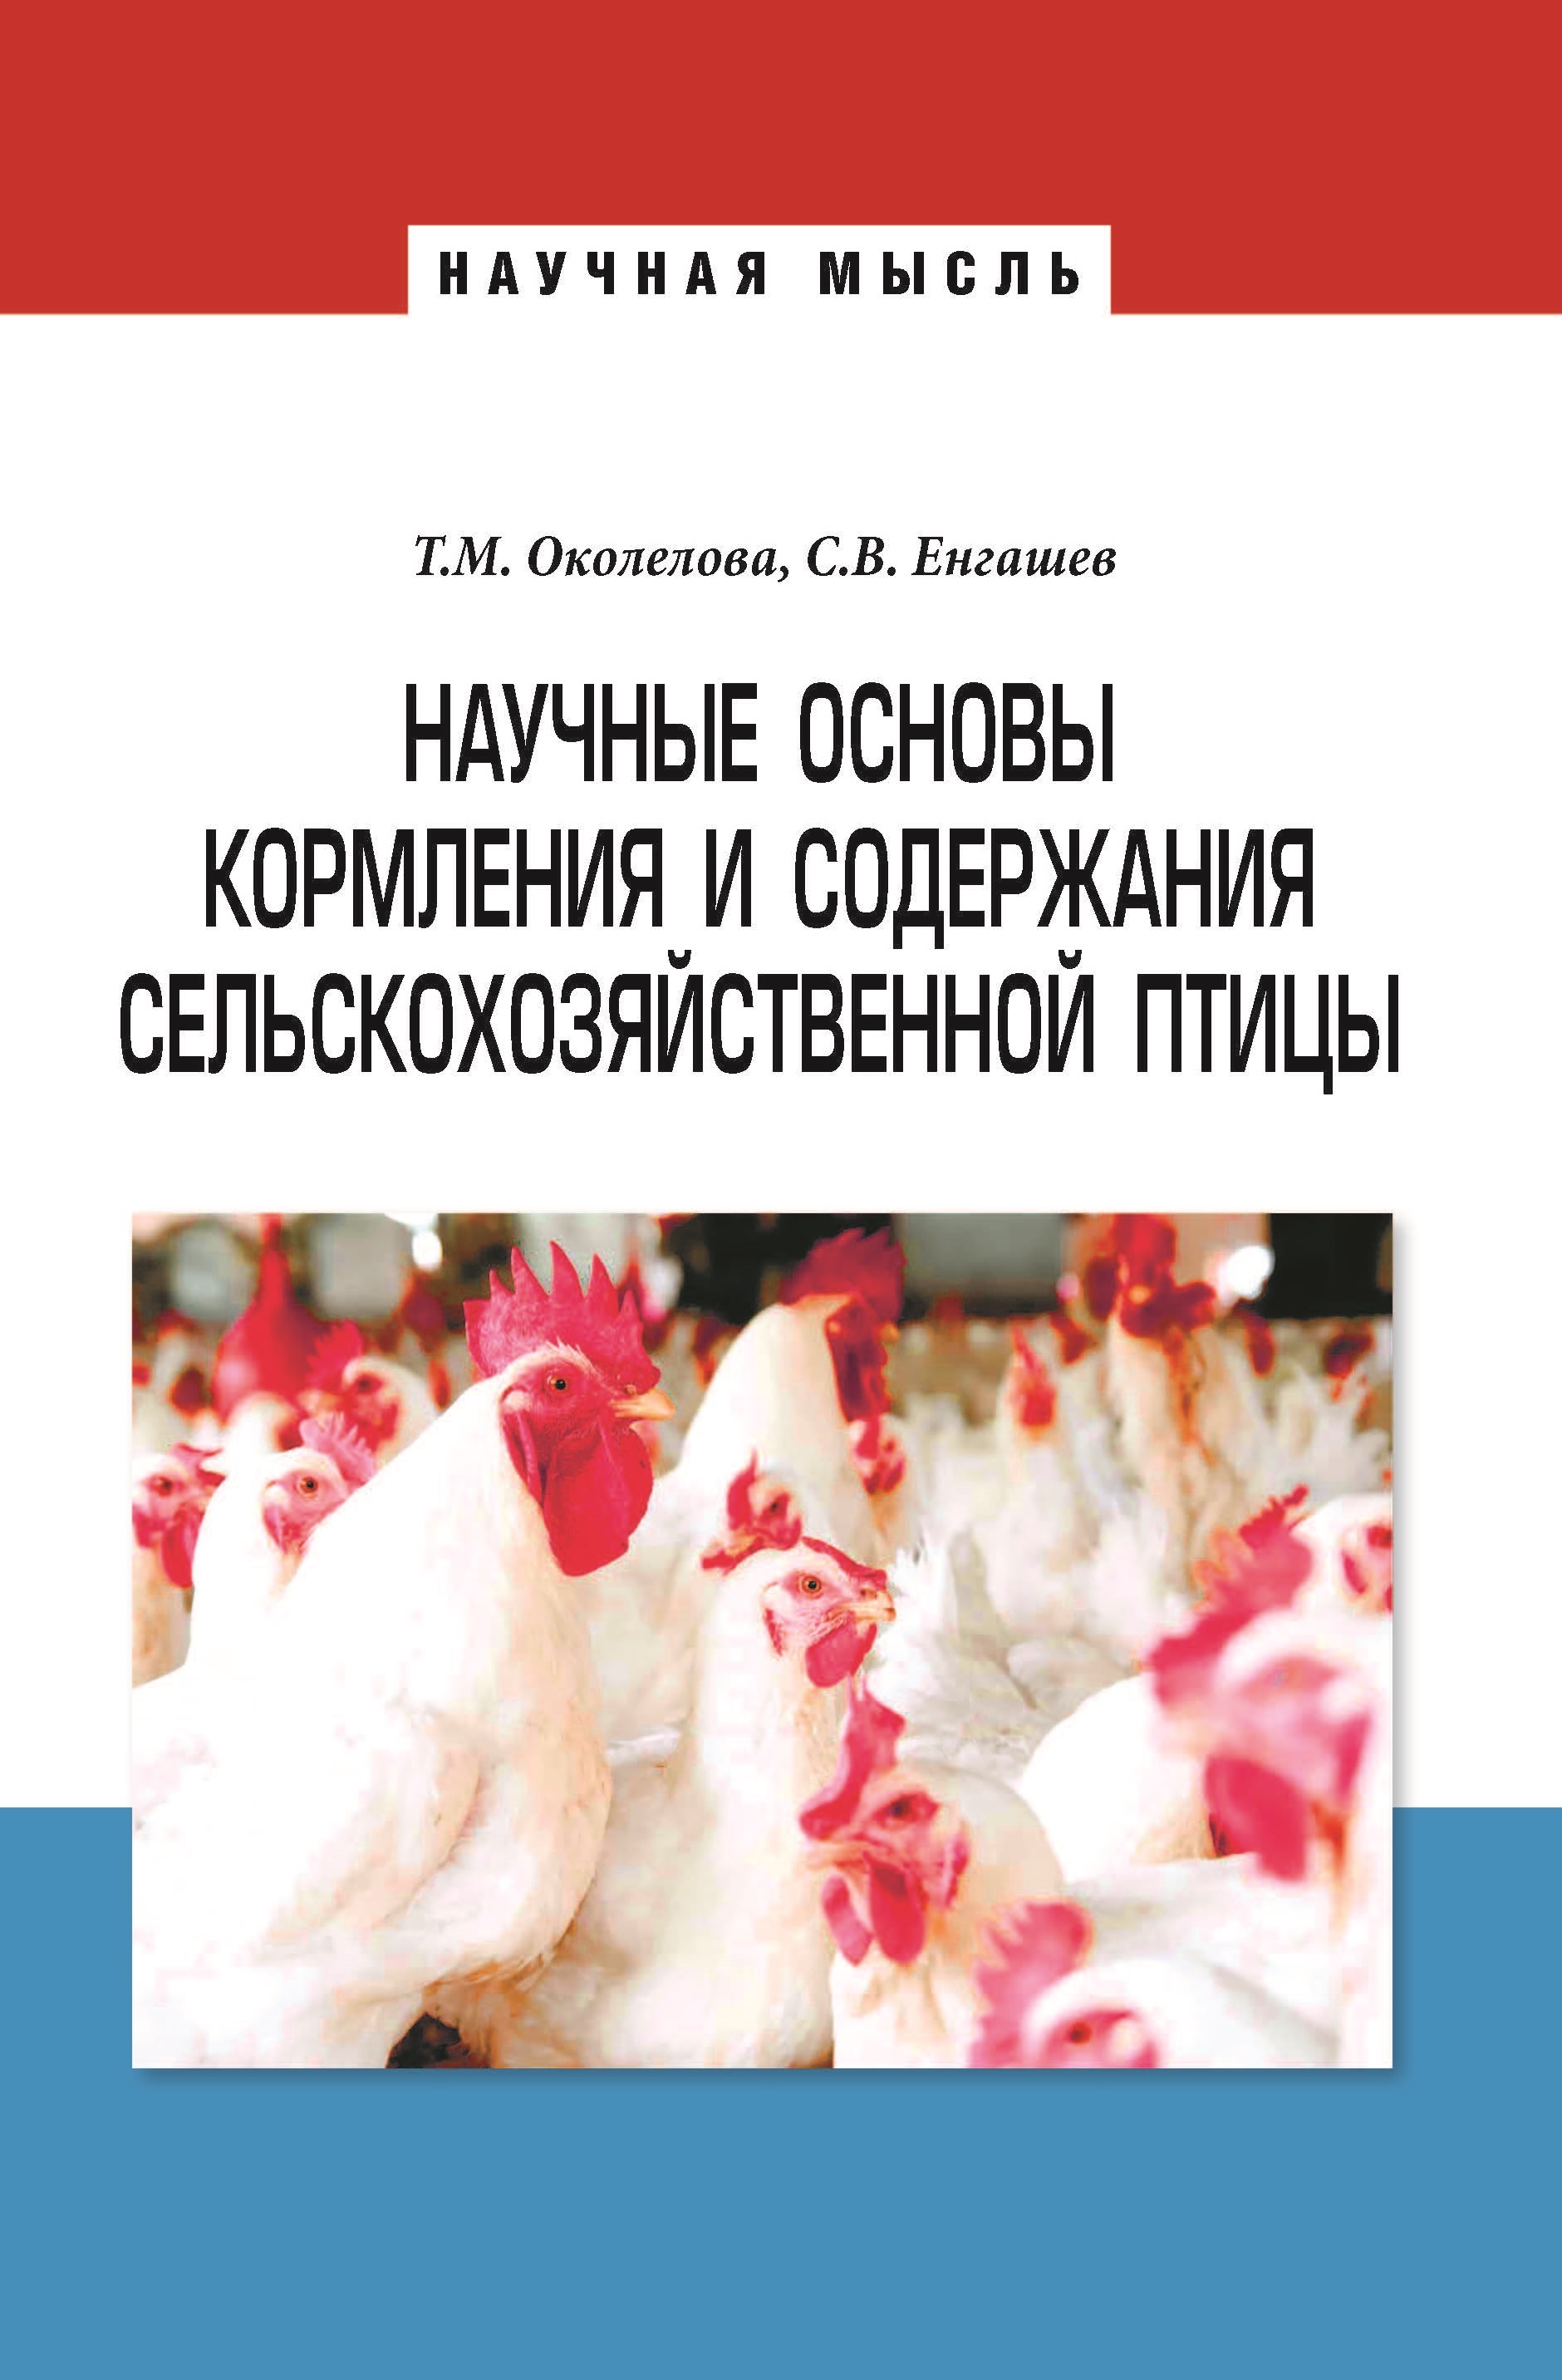 Статья: Фумаровая кислота: применение в птицеводстве и свиноводстве